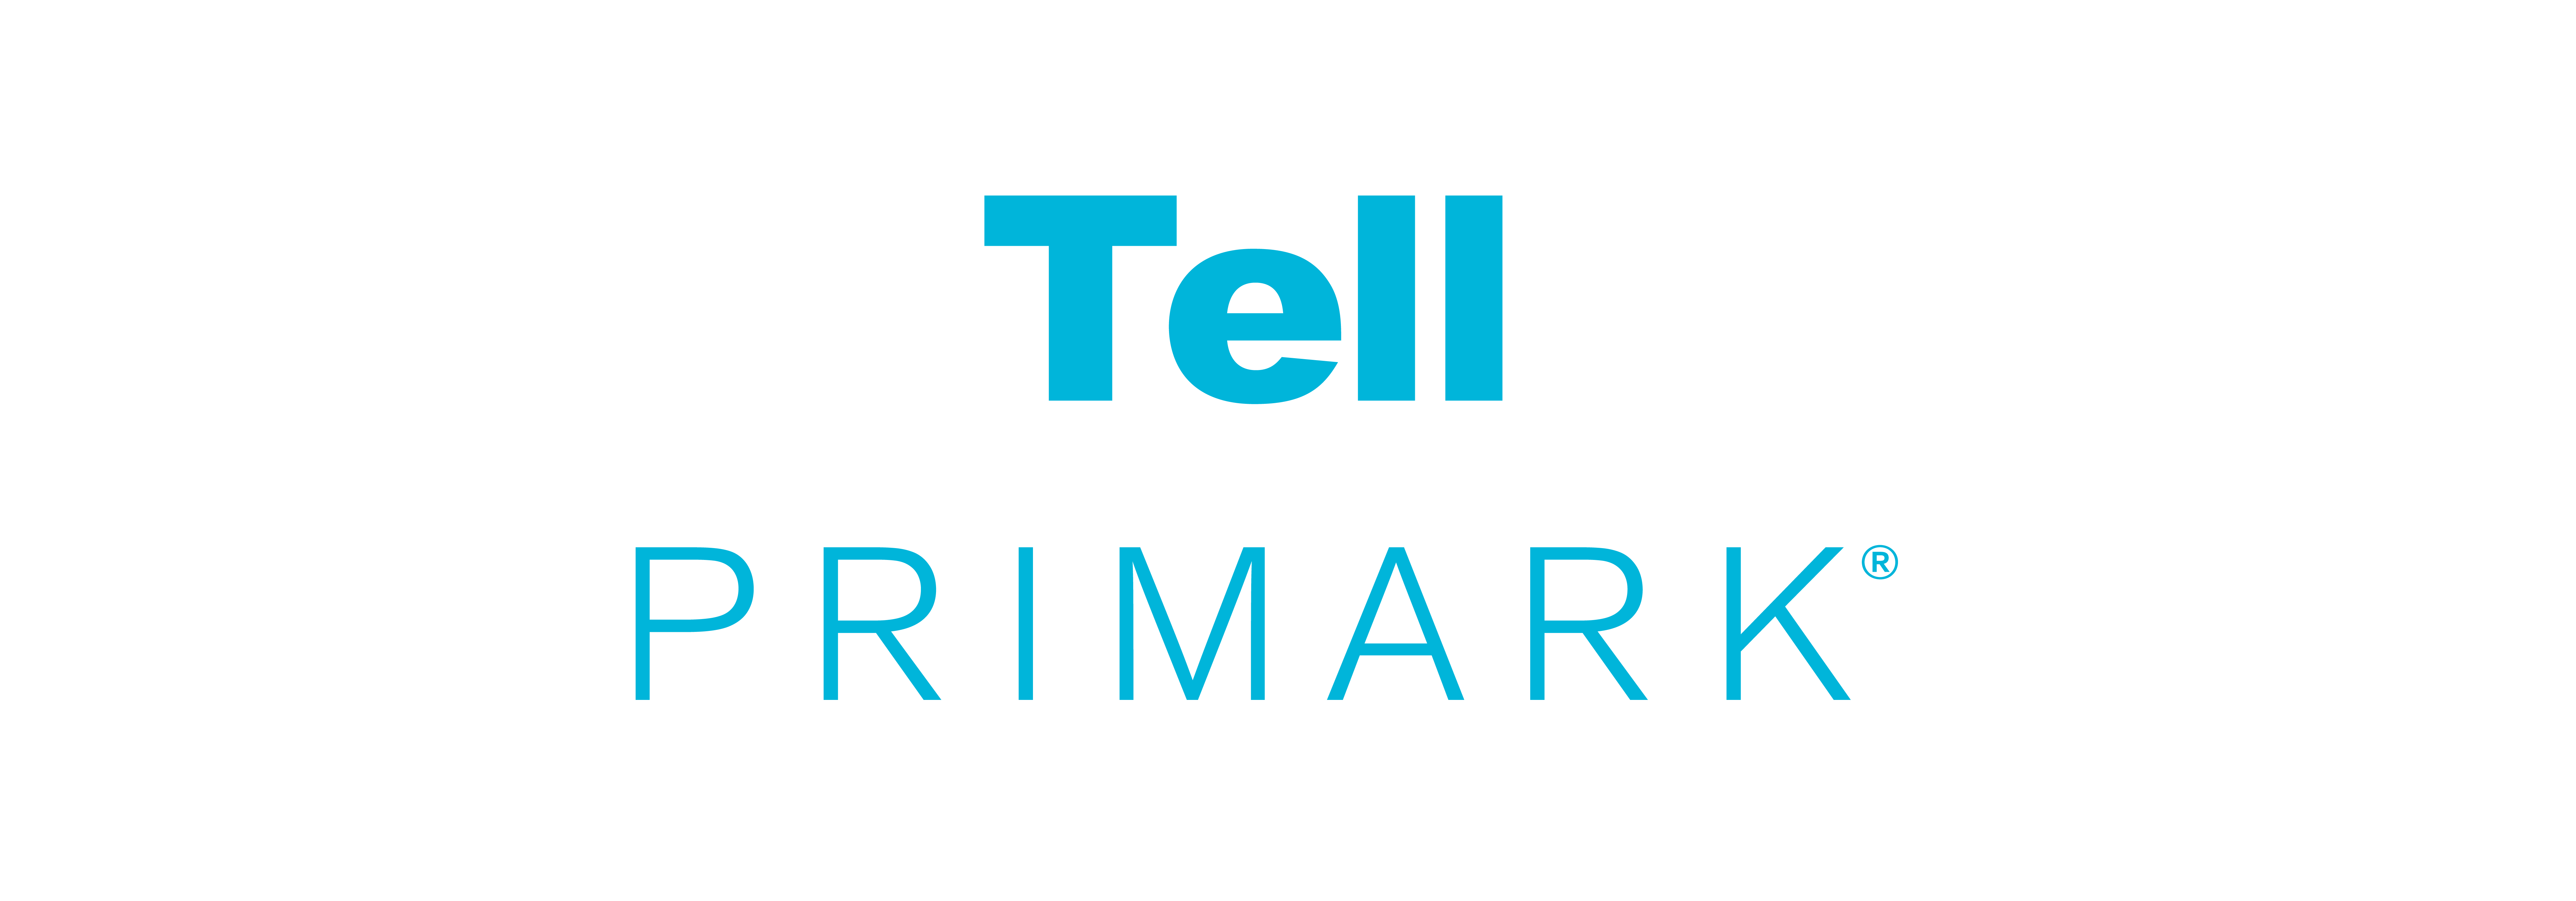 Tell Primark logo